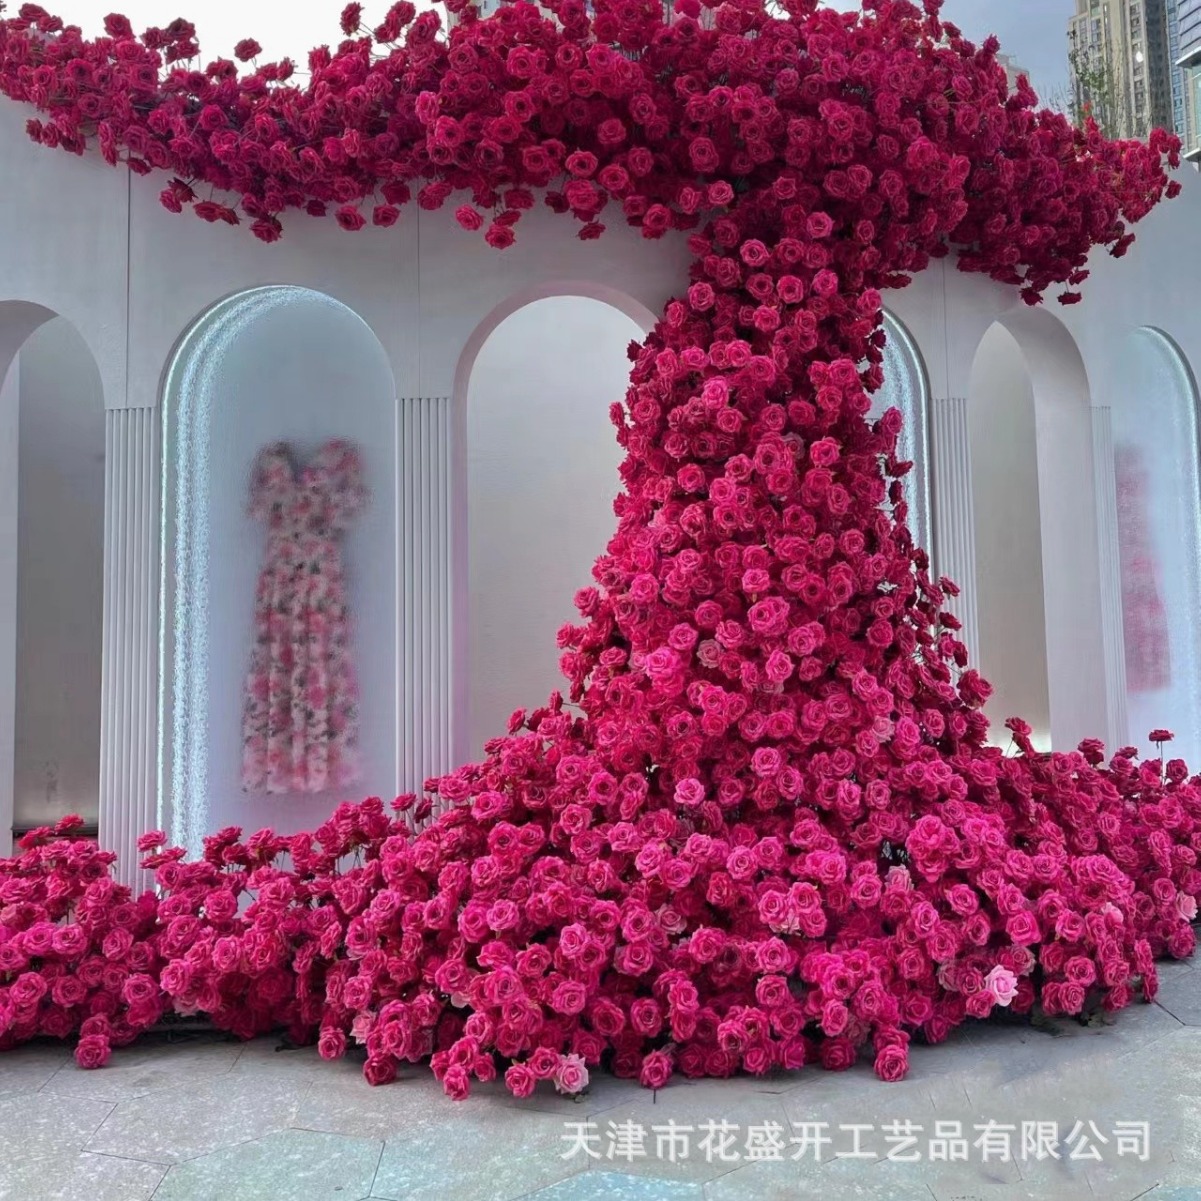 玫红色玫瑰花瀑布弗洛依德商场美陈网红打卡花墙布置玫瑰假花婚庆